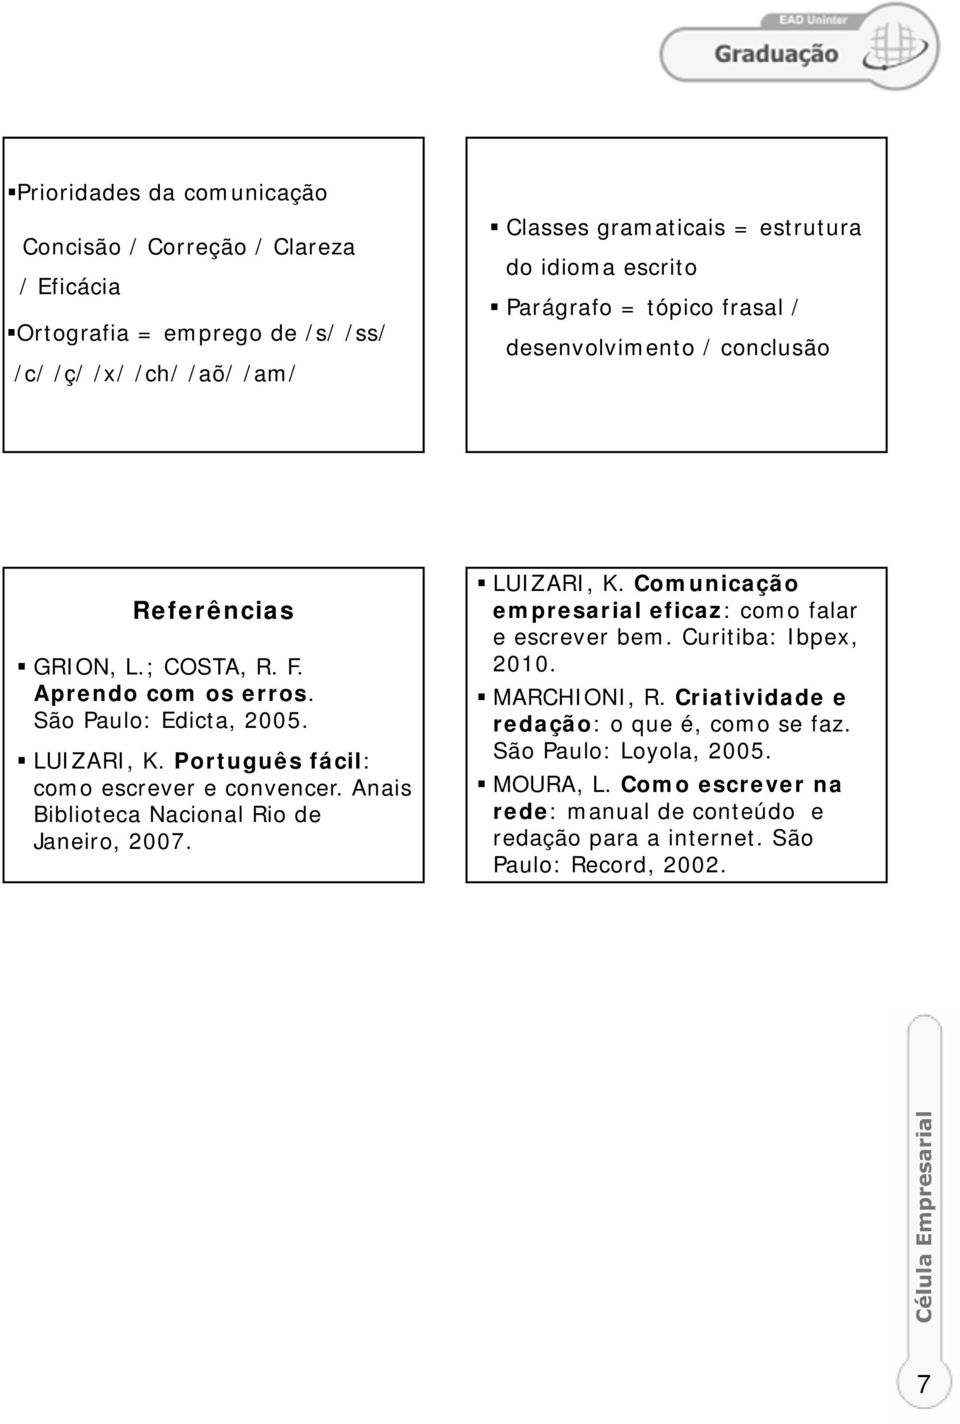 Português fácil: como escrever e convencer. Anais Biblioteca Nacional Rio de Janeiro, 2007. LUIZARI, K. Comunicação empresarial eficaz: como falar e escrever bem.